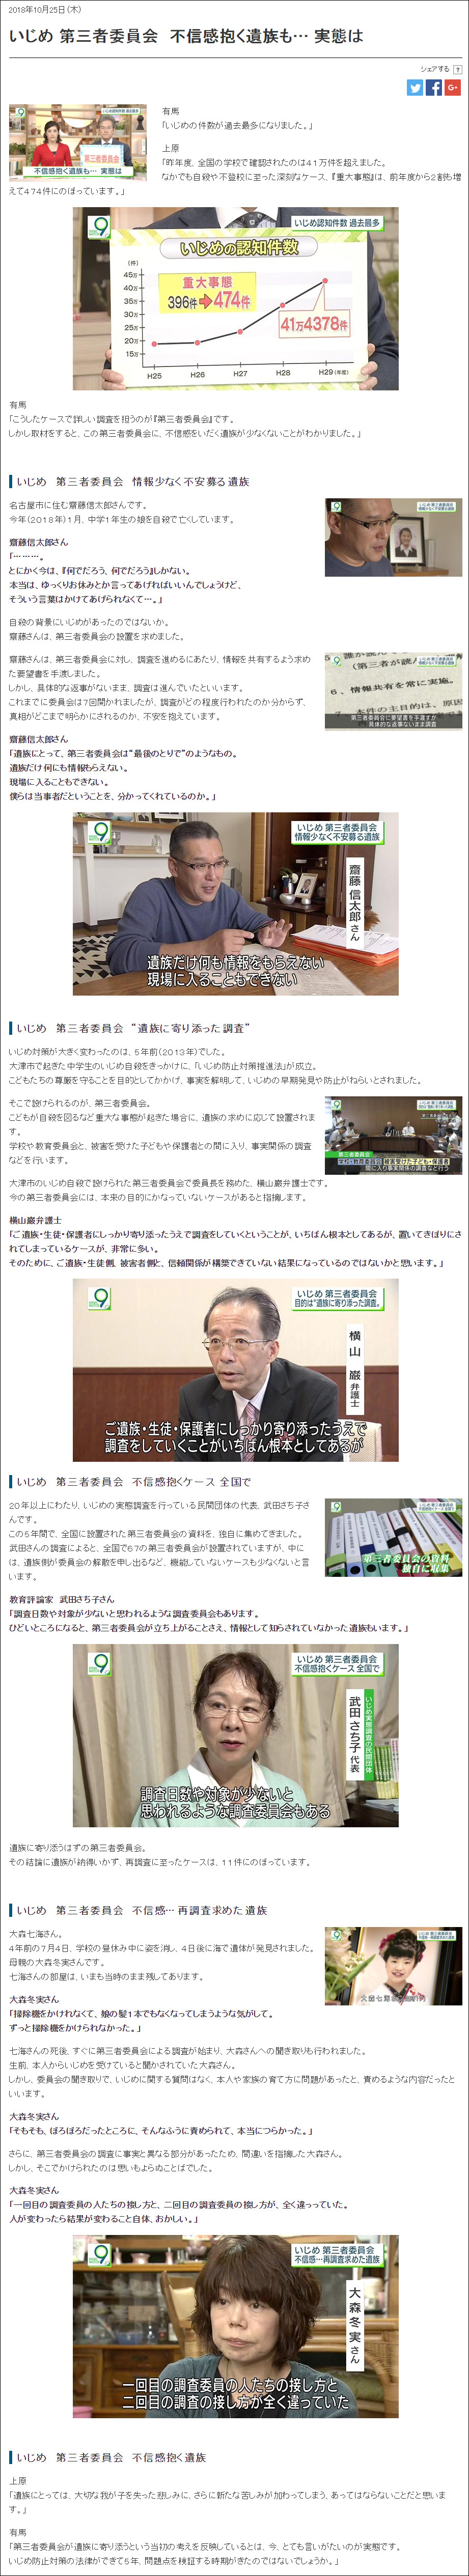 武田さち子：2018年10月25日 NHK「いじめ 第三者委員会　不信感抱く遺族も… 実態は」